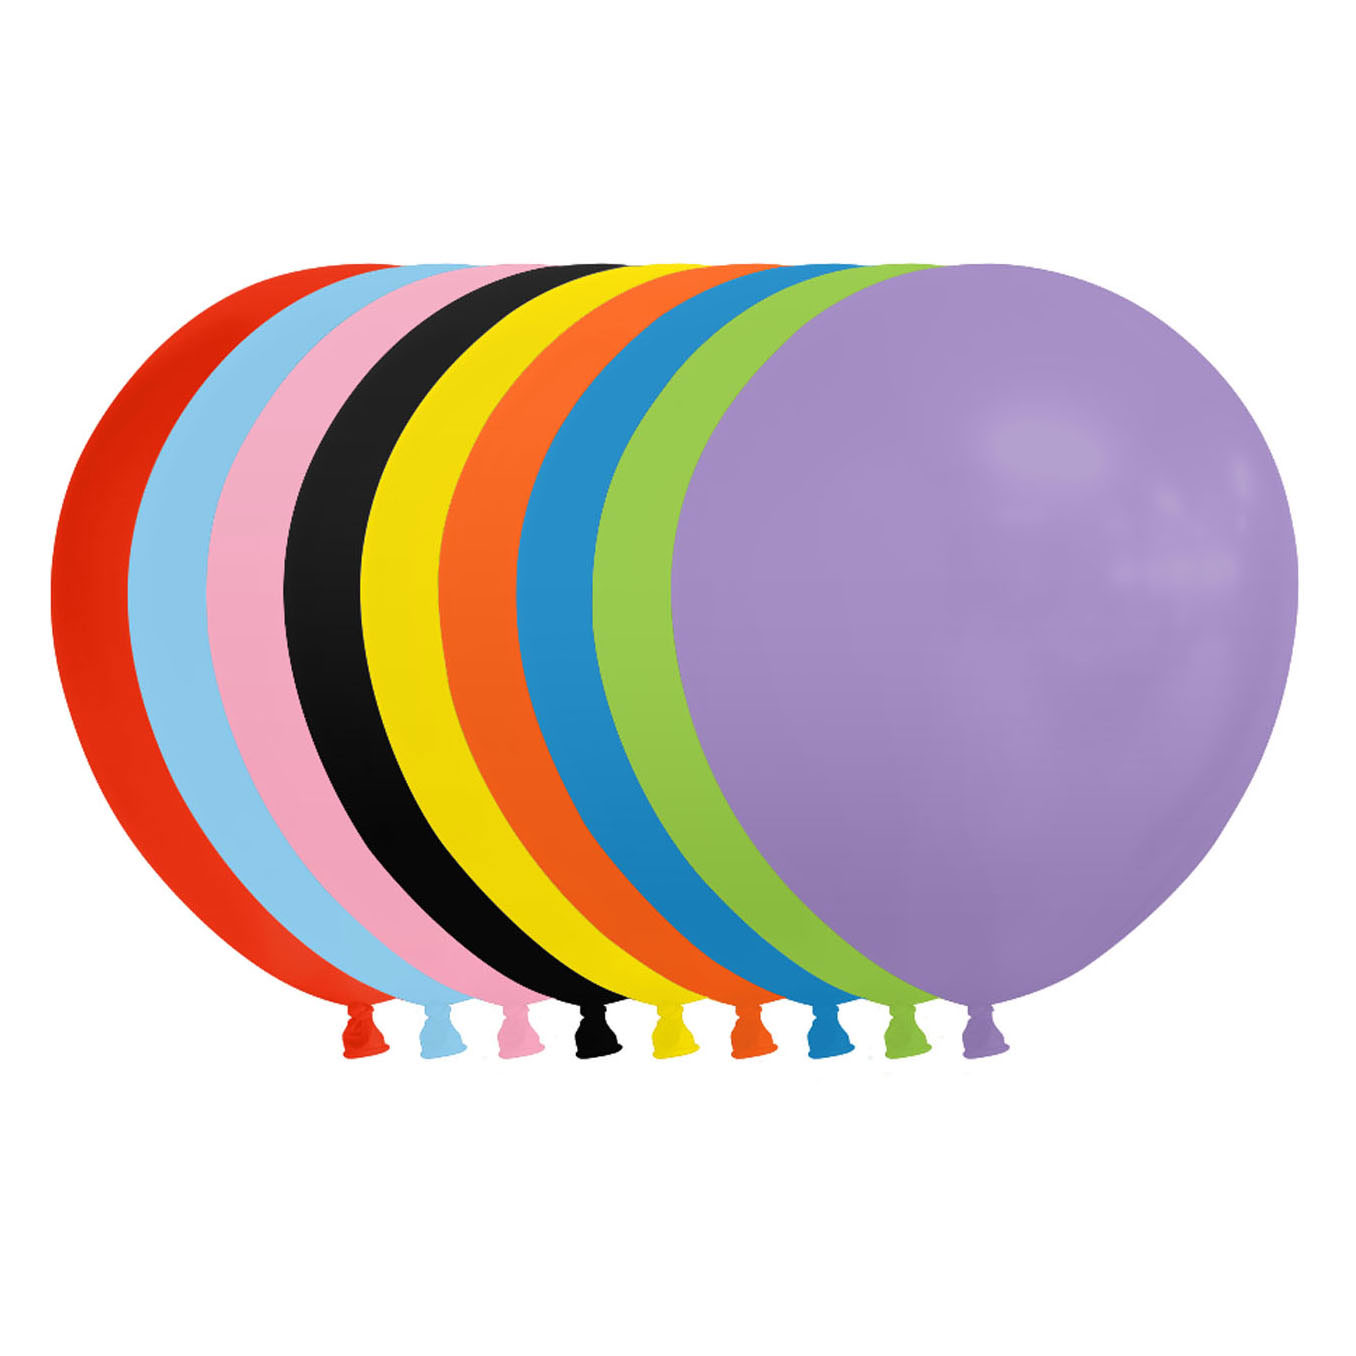 Ballon de baudruche de toutes les couleurs.